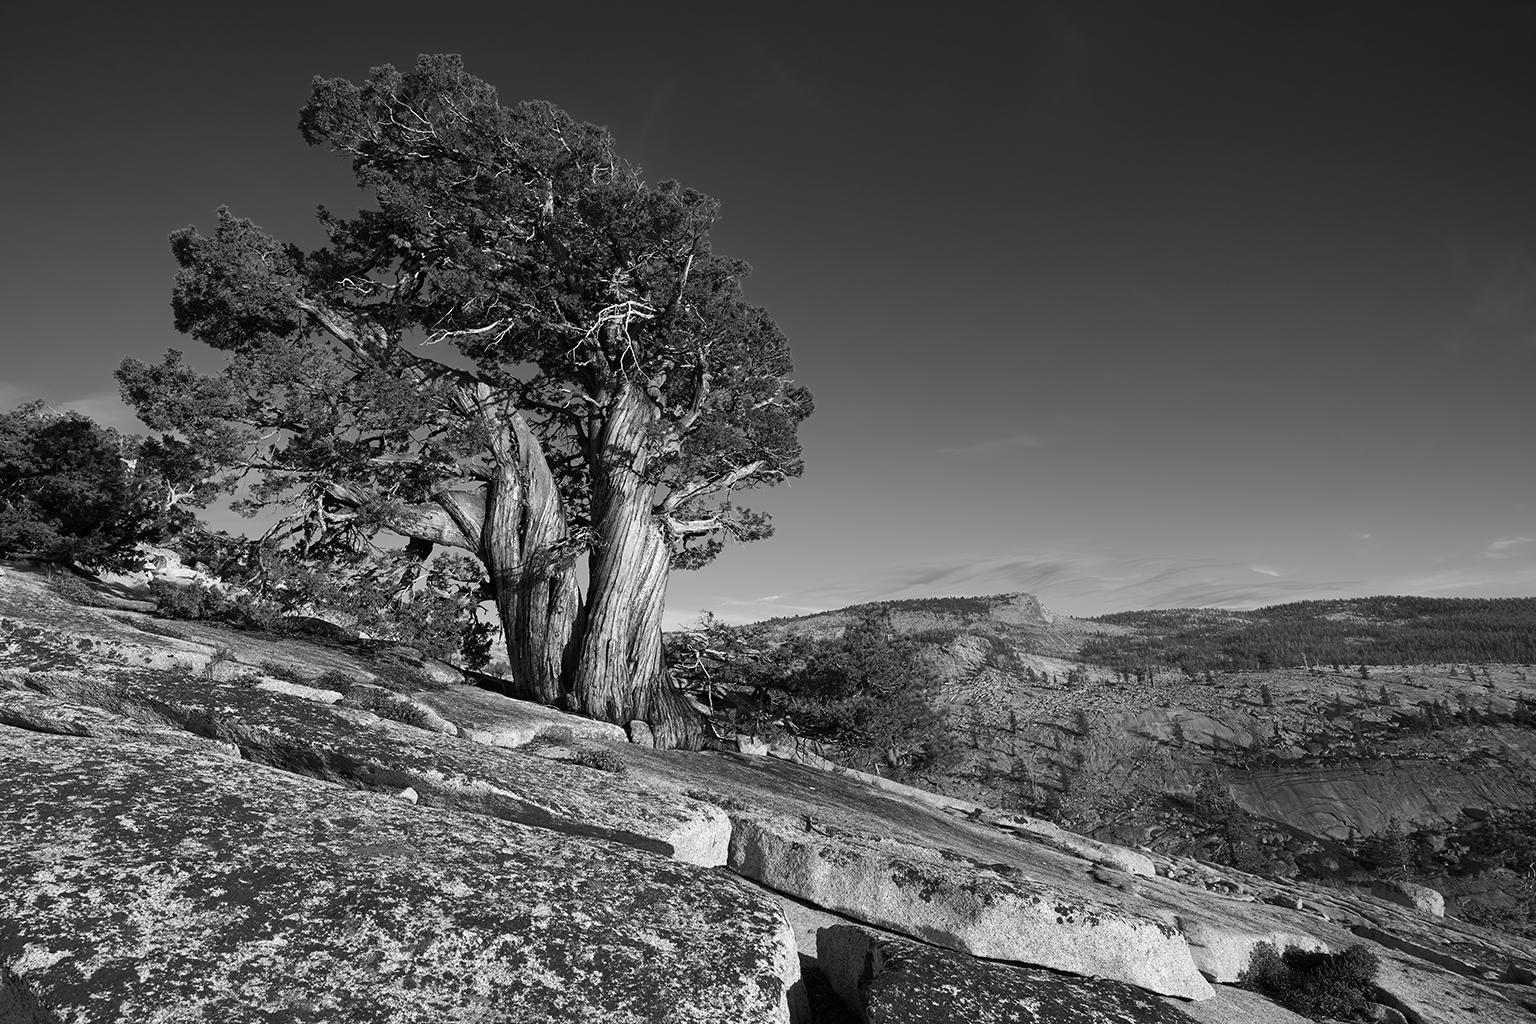 Étude de l'arbre II - photographie grand format b/w d'un arbre ancien solitaire dans un paysage